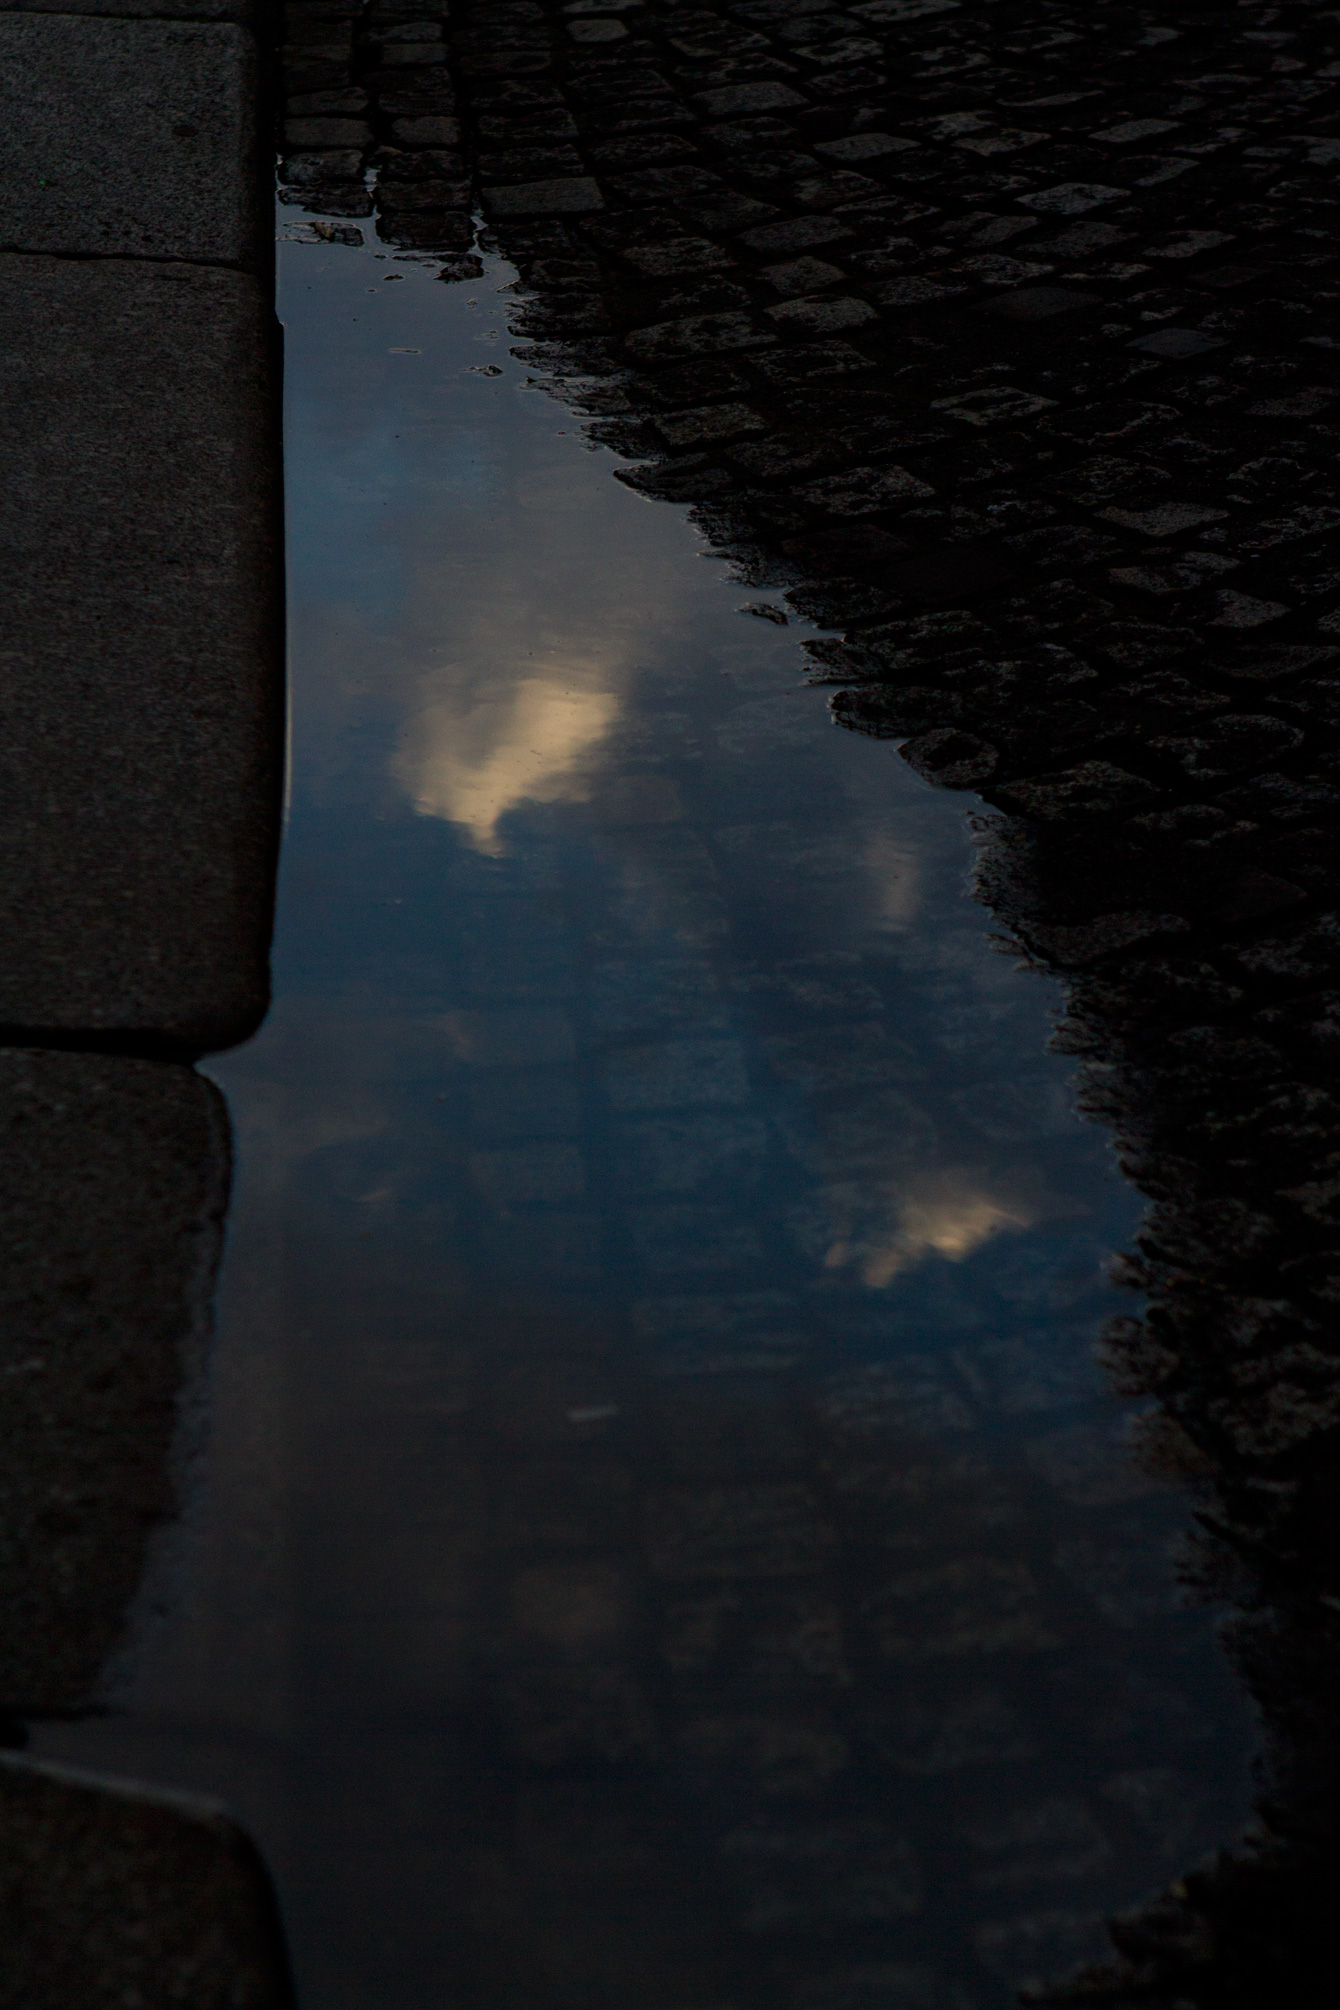 cloud-puddle-reflection-paris-cobbles-street